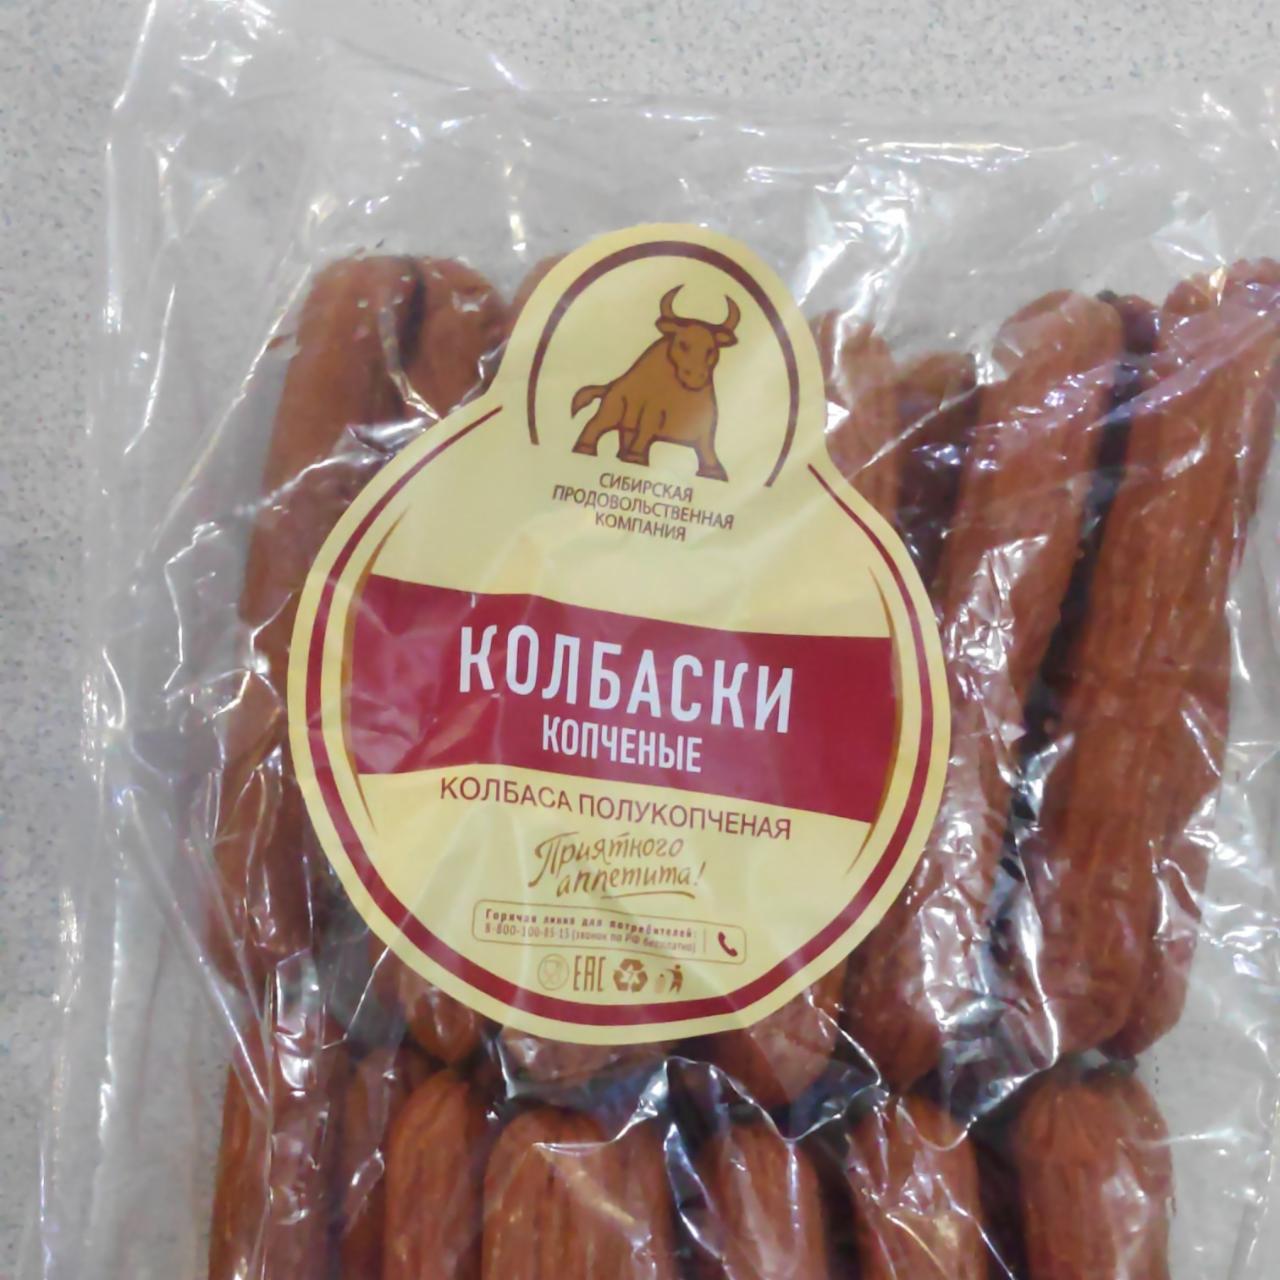 Фото - Колбаски копченые Сибирская продовольственная компания